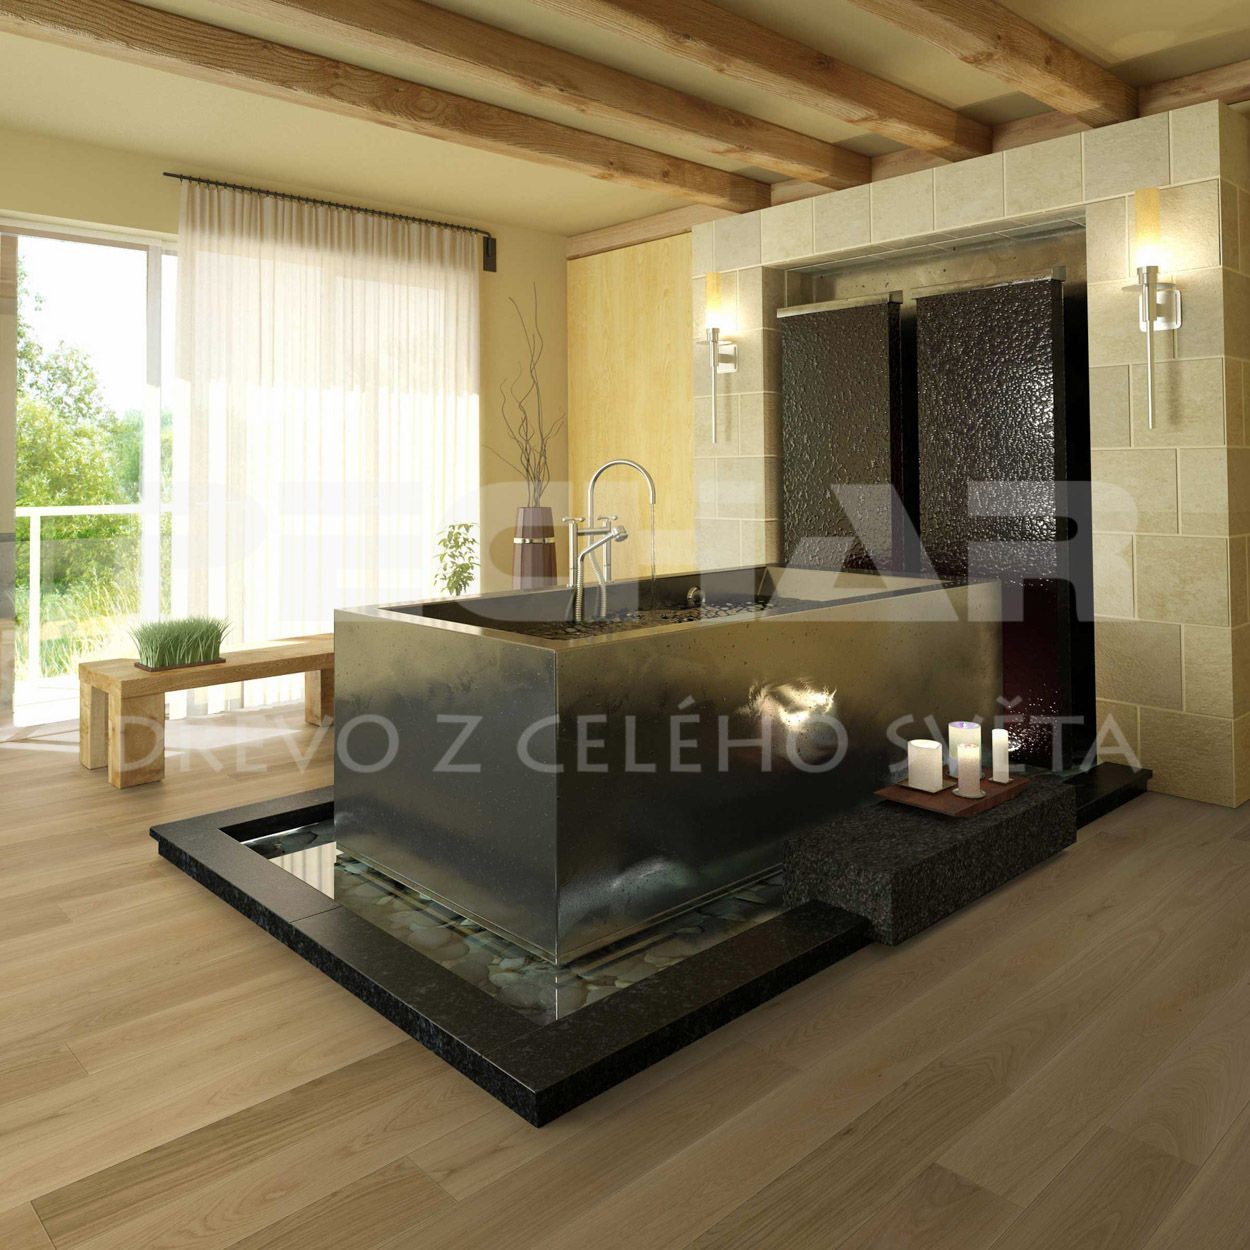 Dubové masivní podlahy v třídění Select od rakouského výrobce Weiss